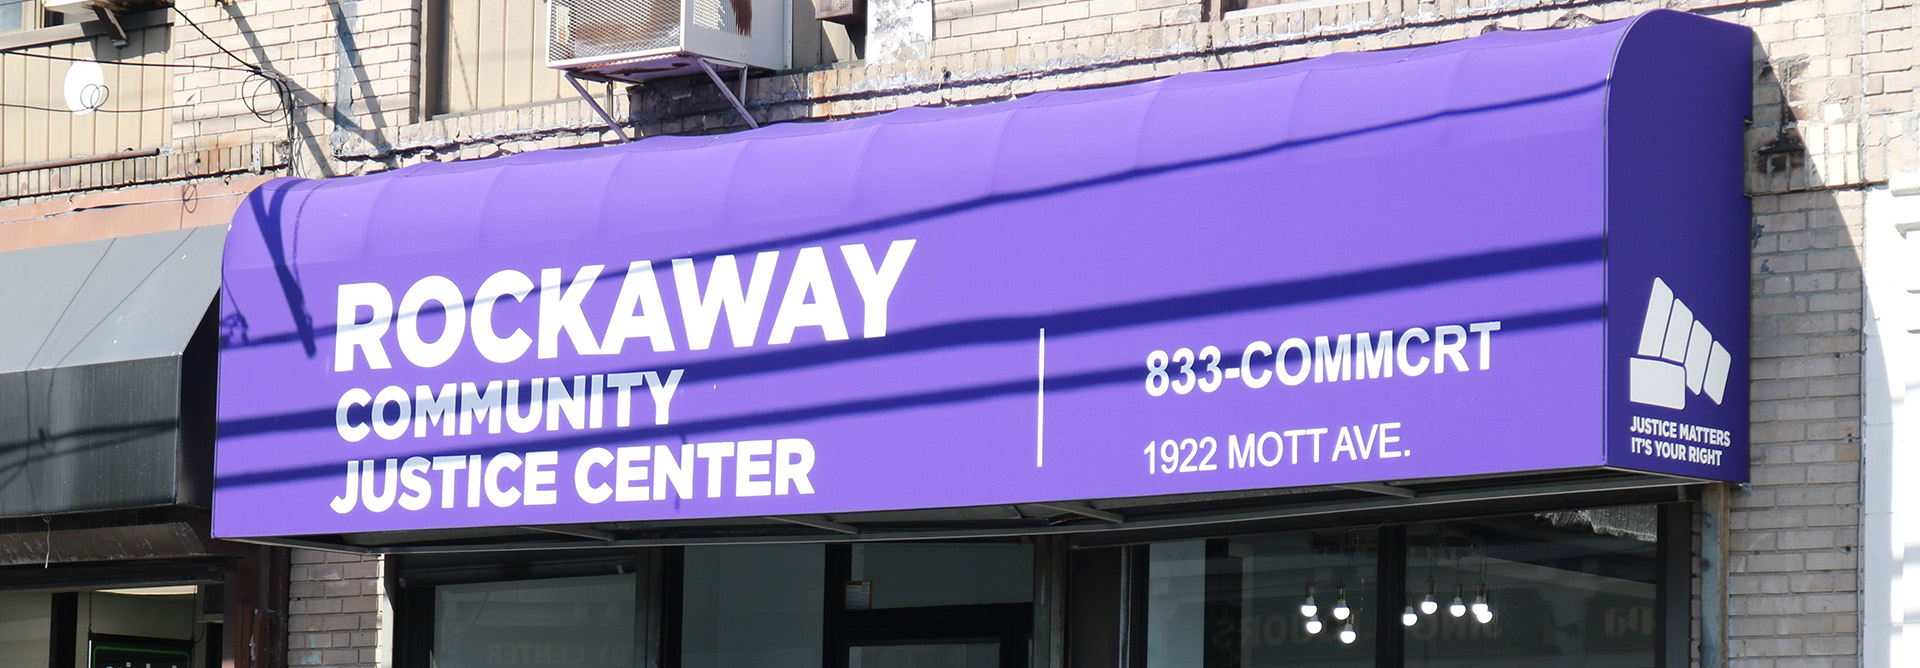 Rockaway Community Justice Center